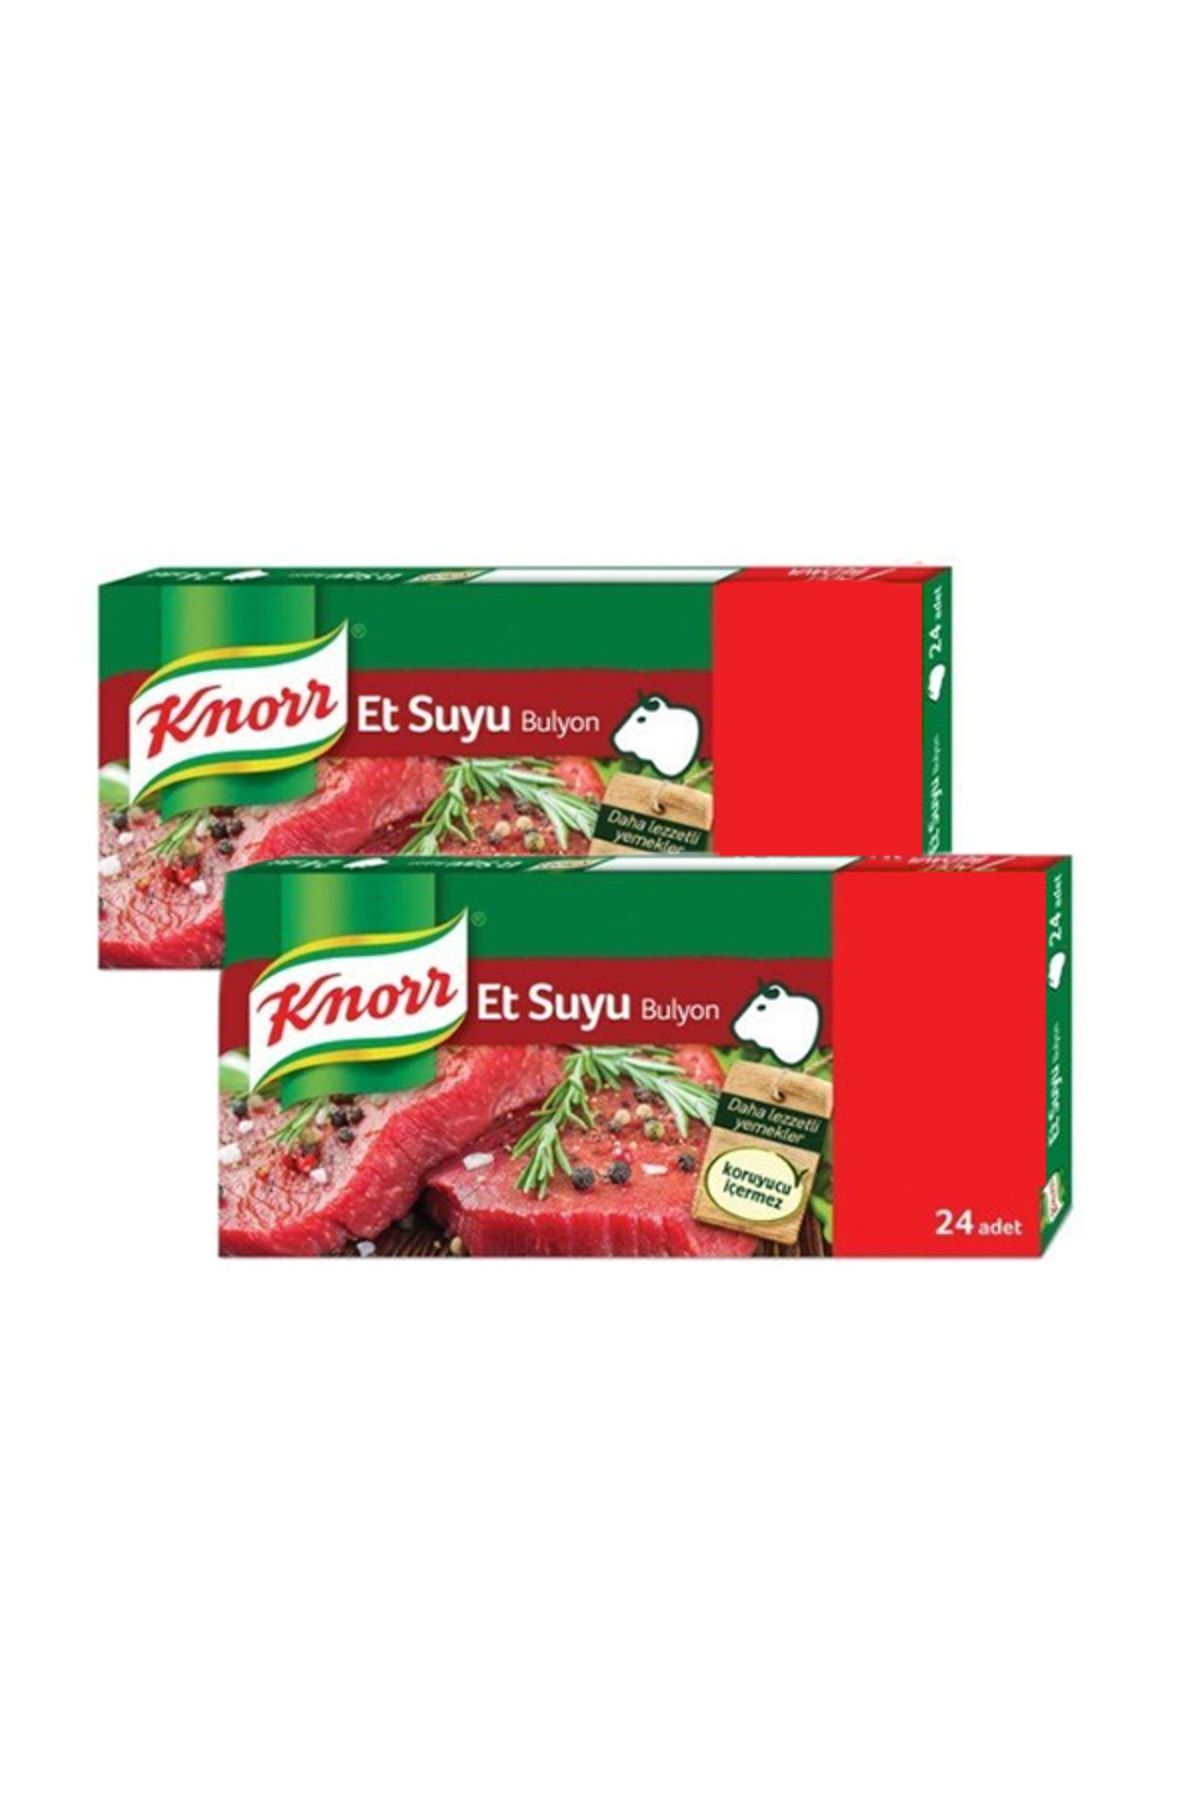 Knorr Et Suyu Bulyon (24 Adet), 2 Paket